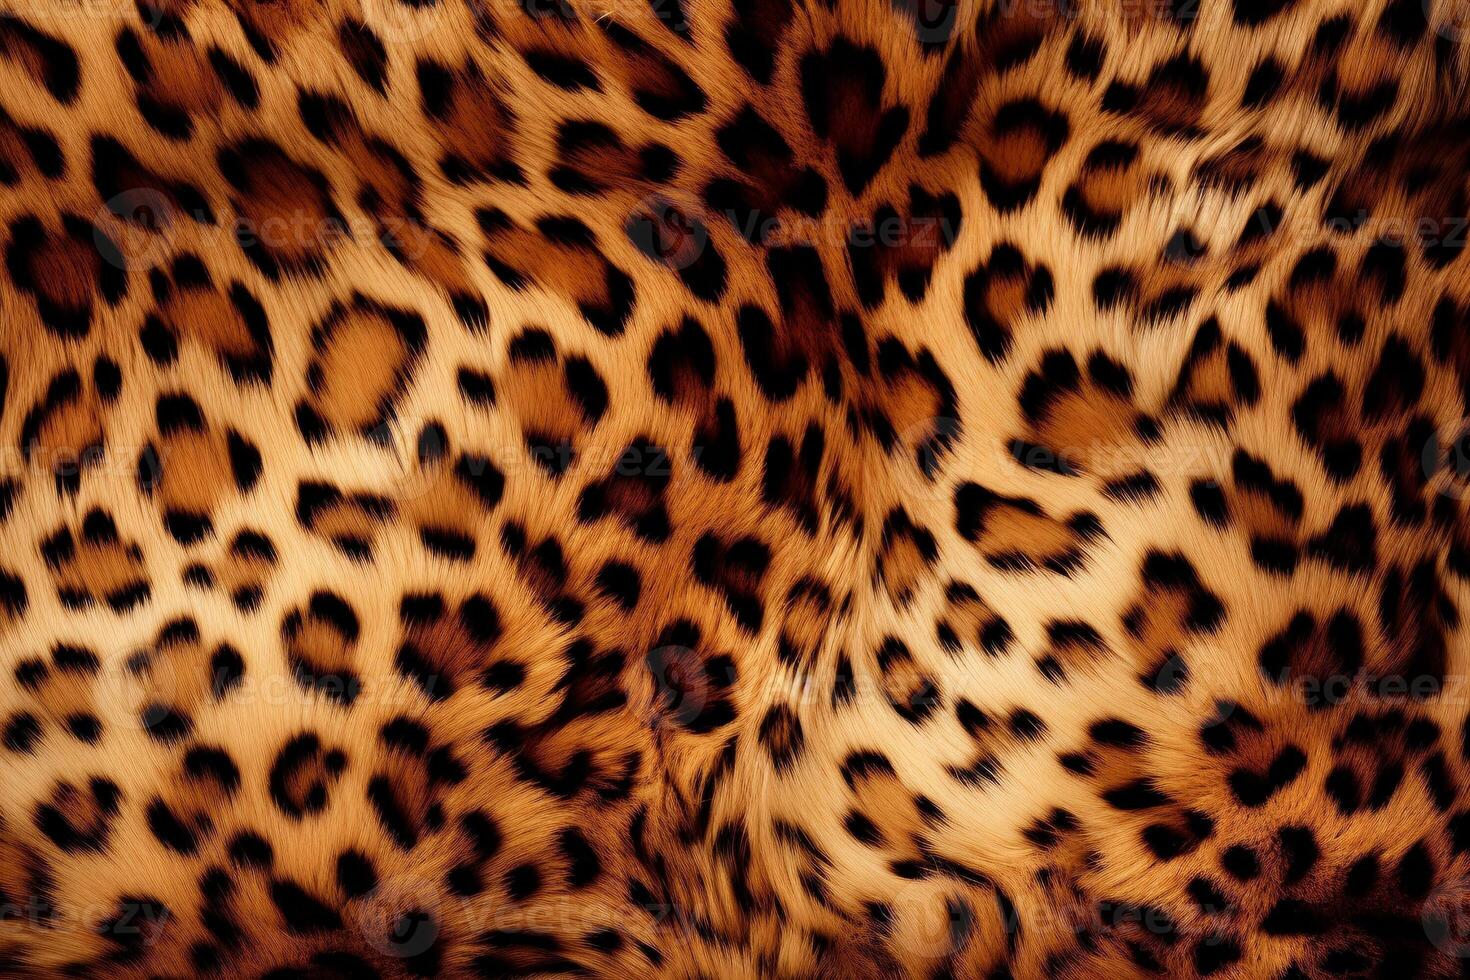 gepard hud päls textur, gepard päls bakgrund, fluffig gepard hud päls textur, gepard hud päls mönster, djur- hud päls textur, foto